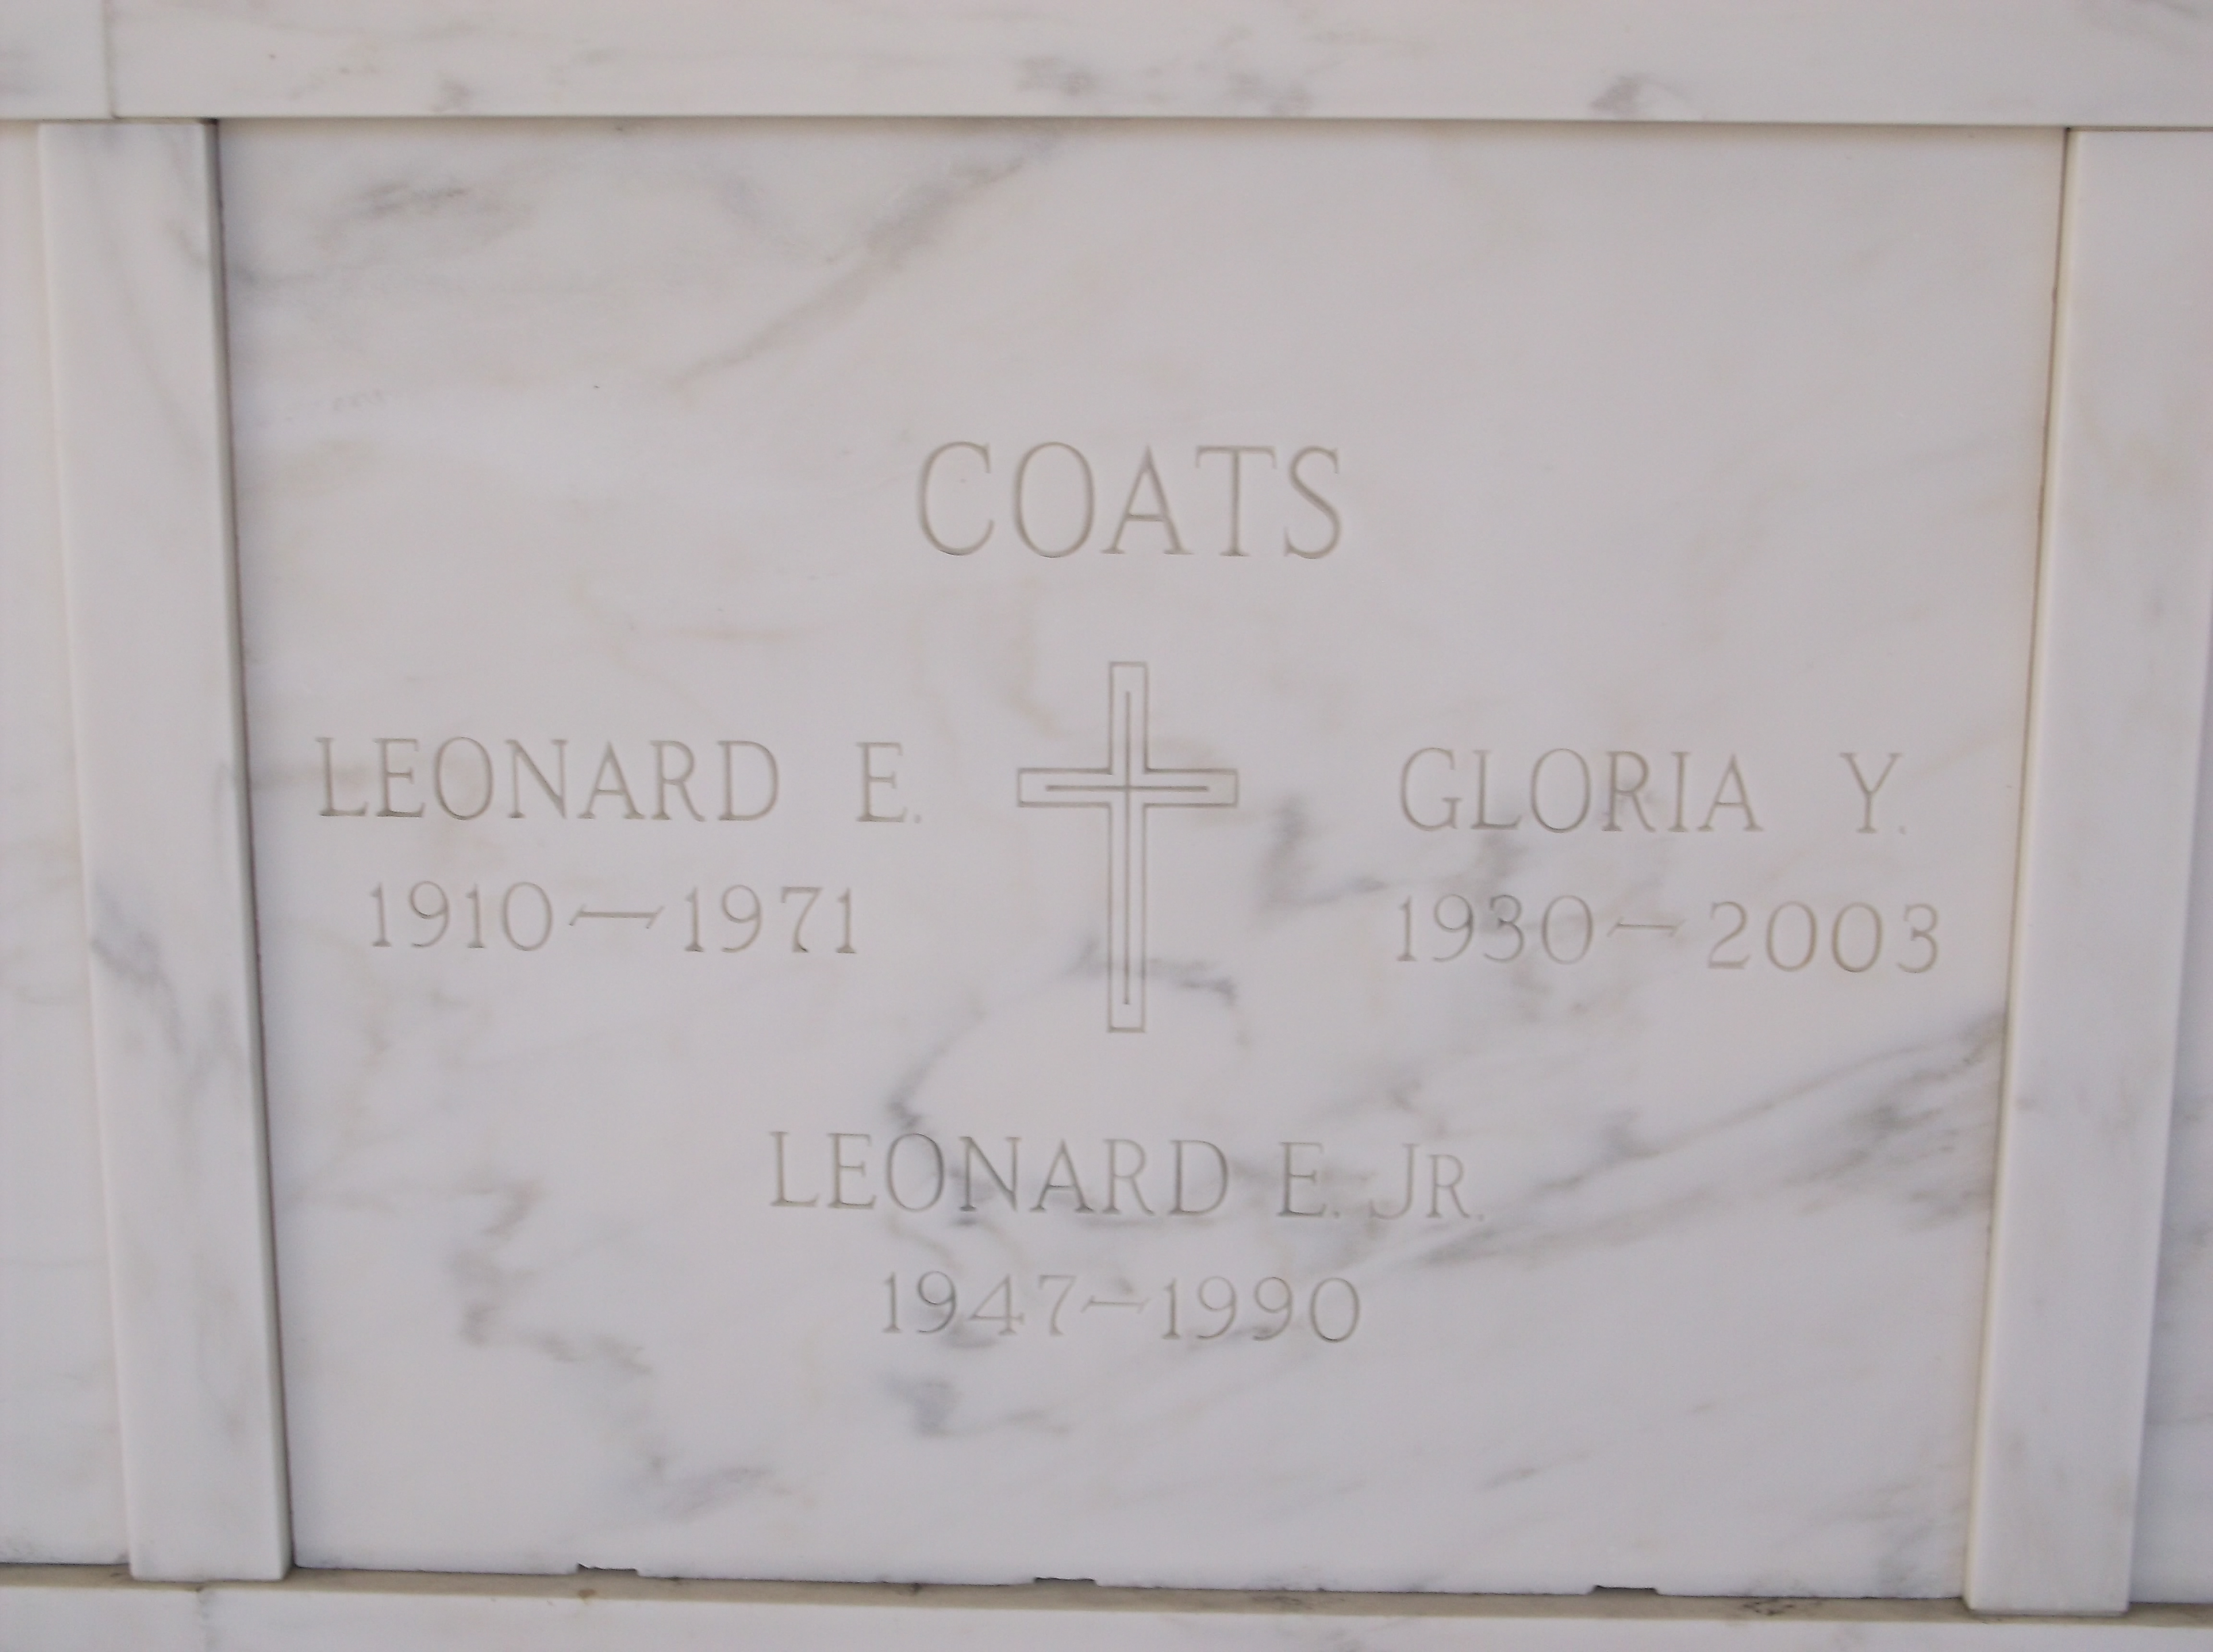 Leonard E Coats